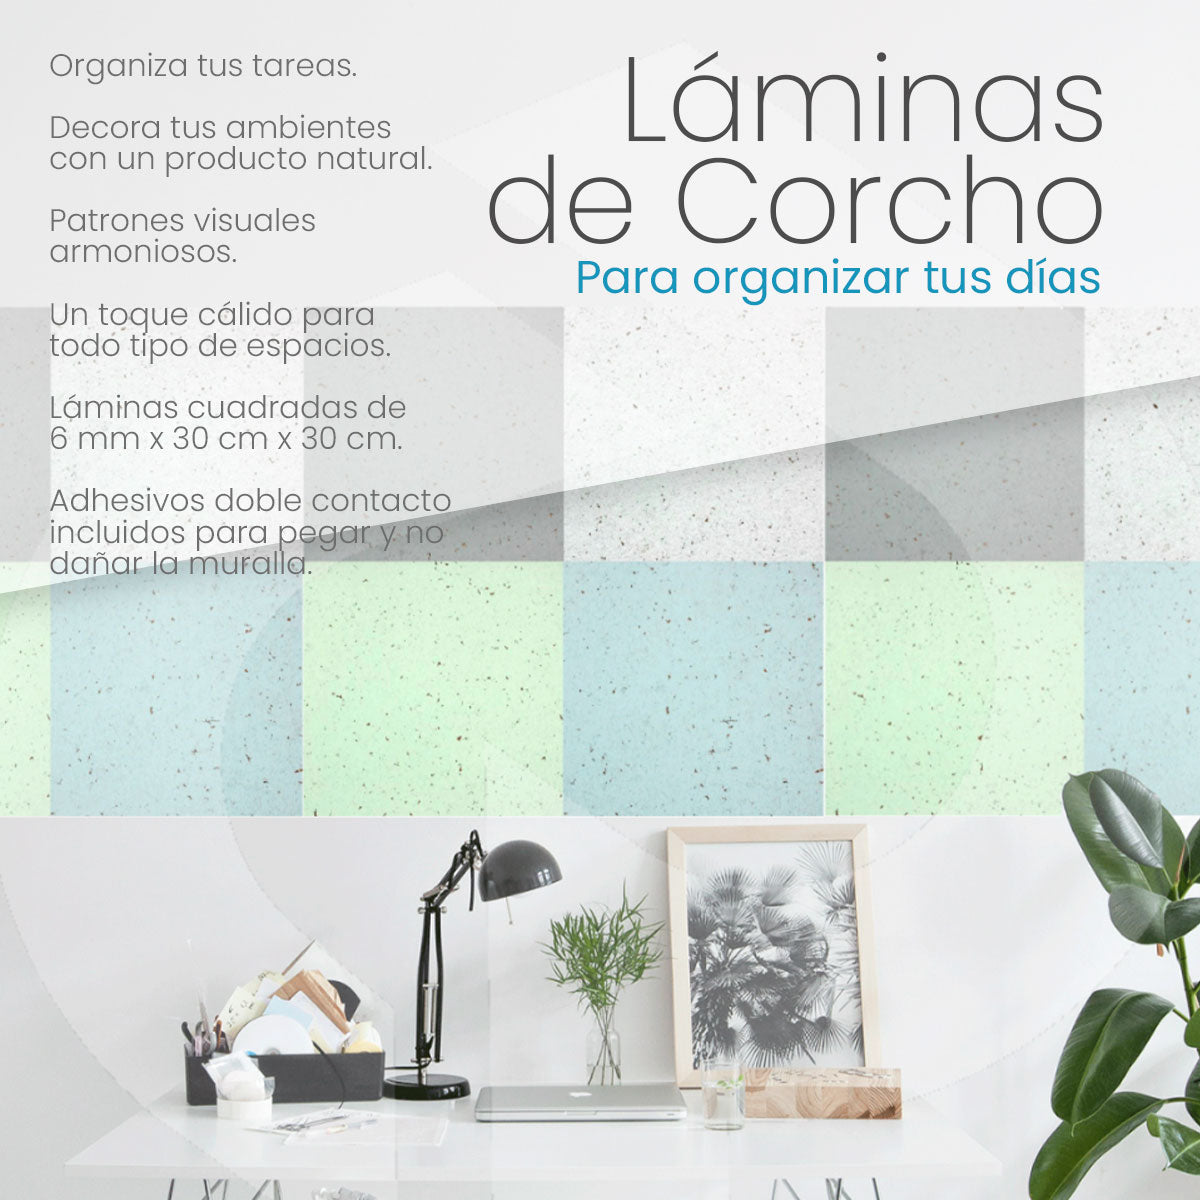 Láminas de Corcho para Organizar tu Día importado desde Portugal con adhesivos doble contacto incluidos